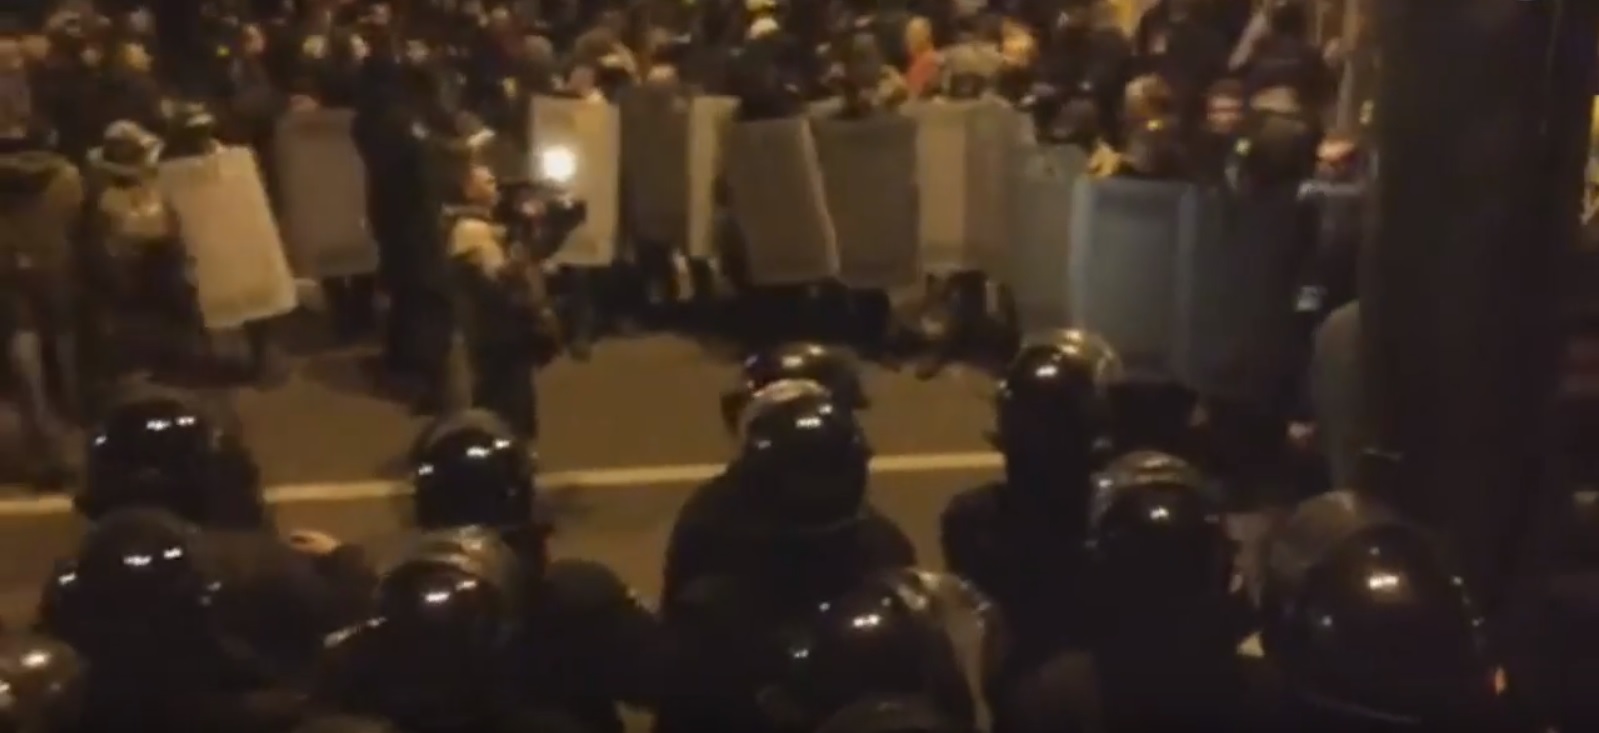 Під Радою на ніч лишились сотні протестувальників (пряма трансляція, ВІДЕО)